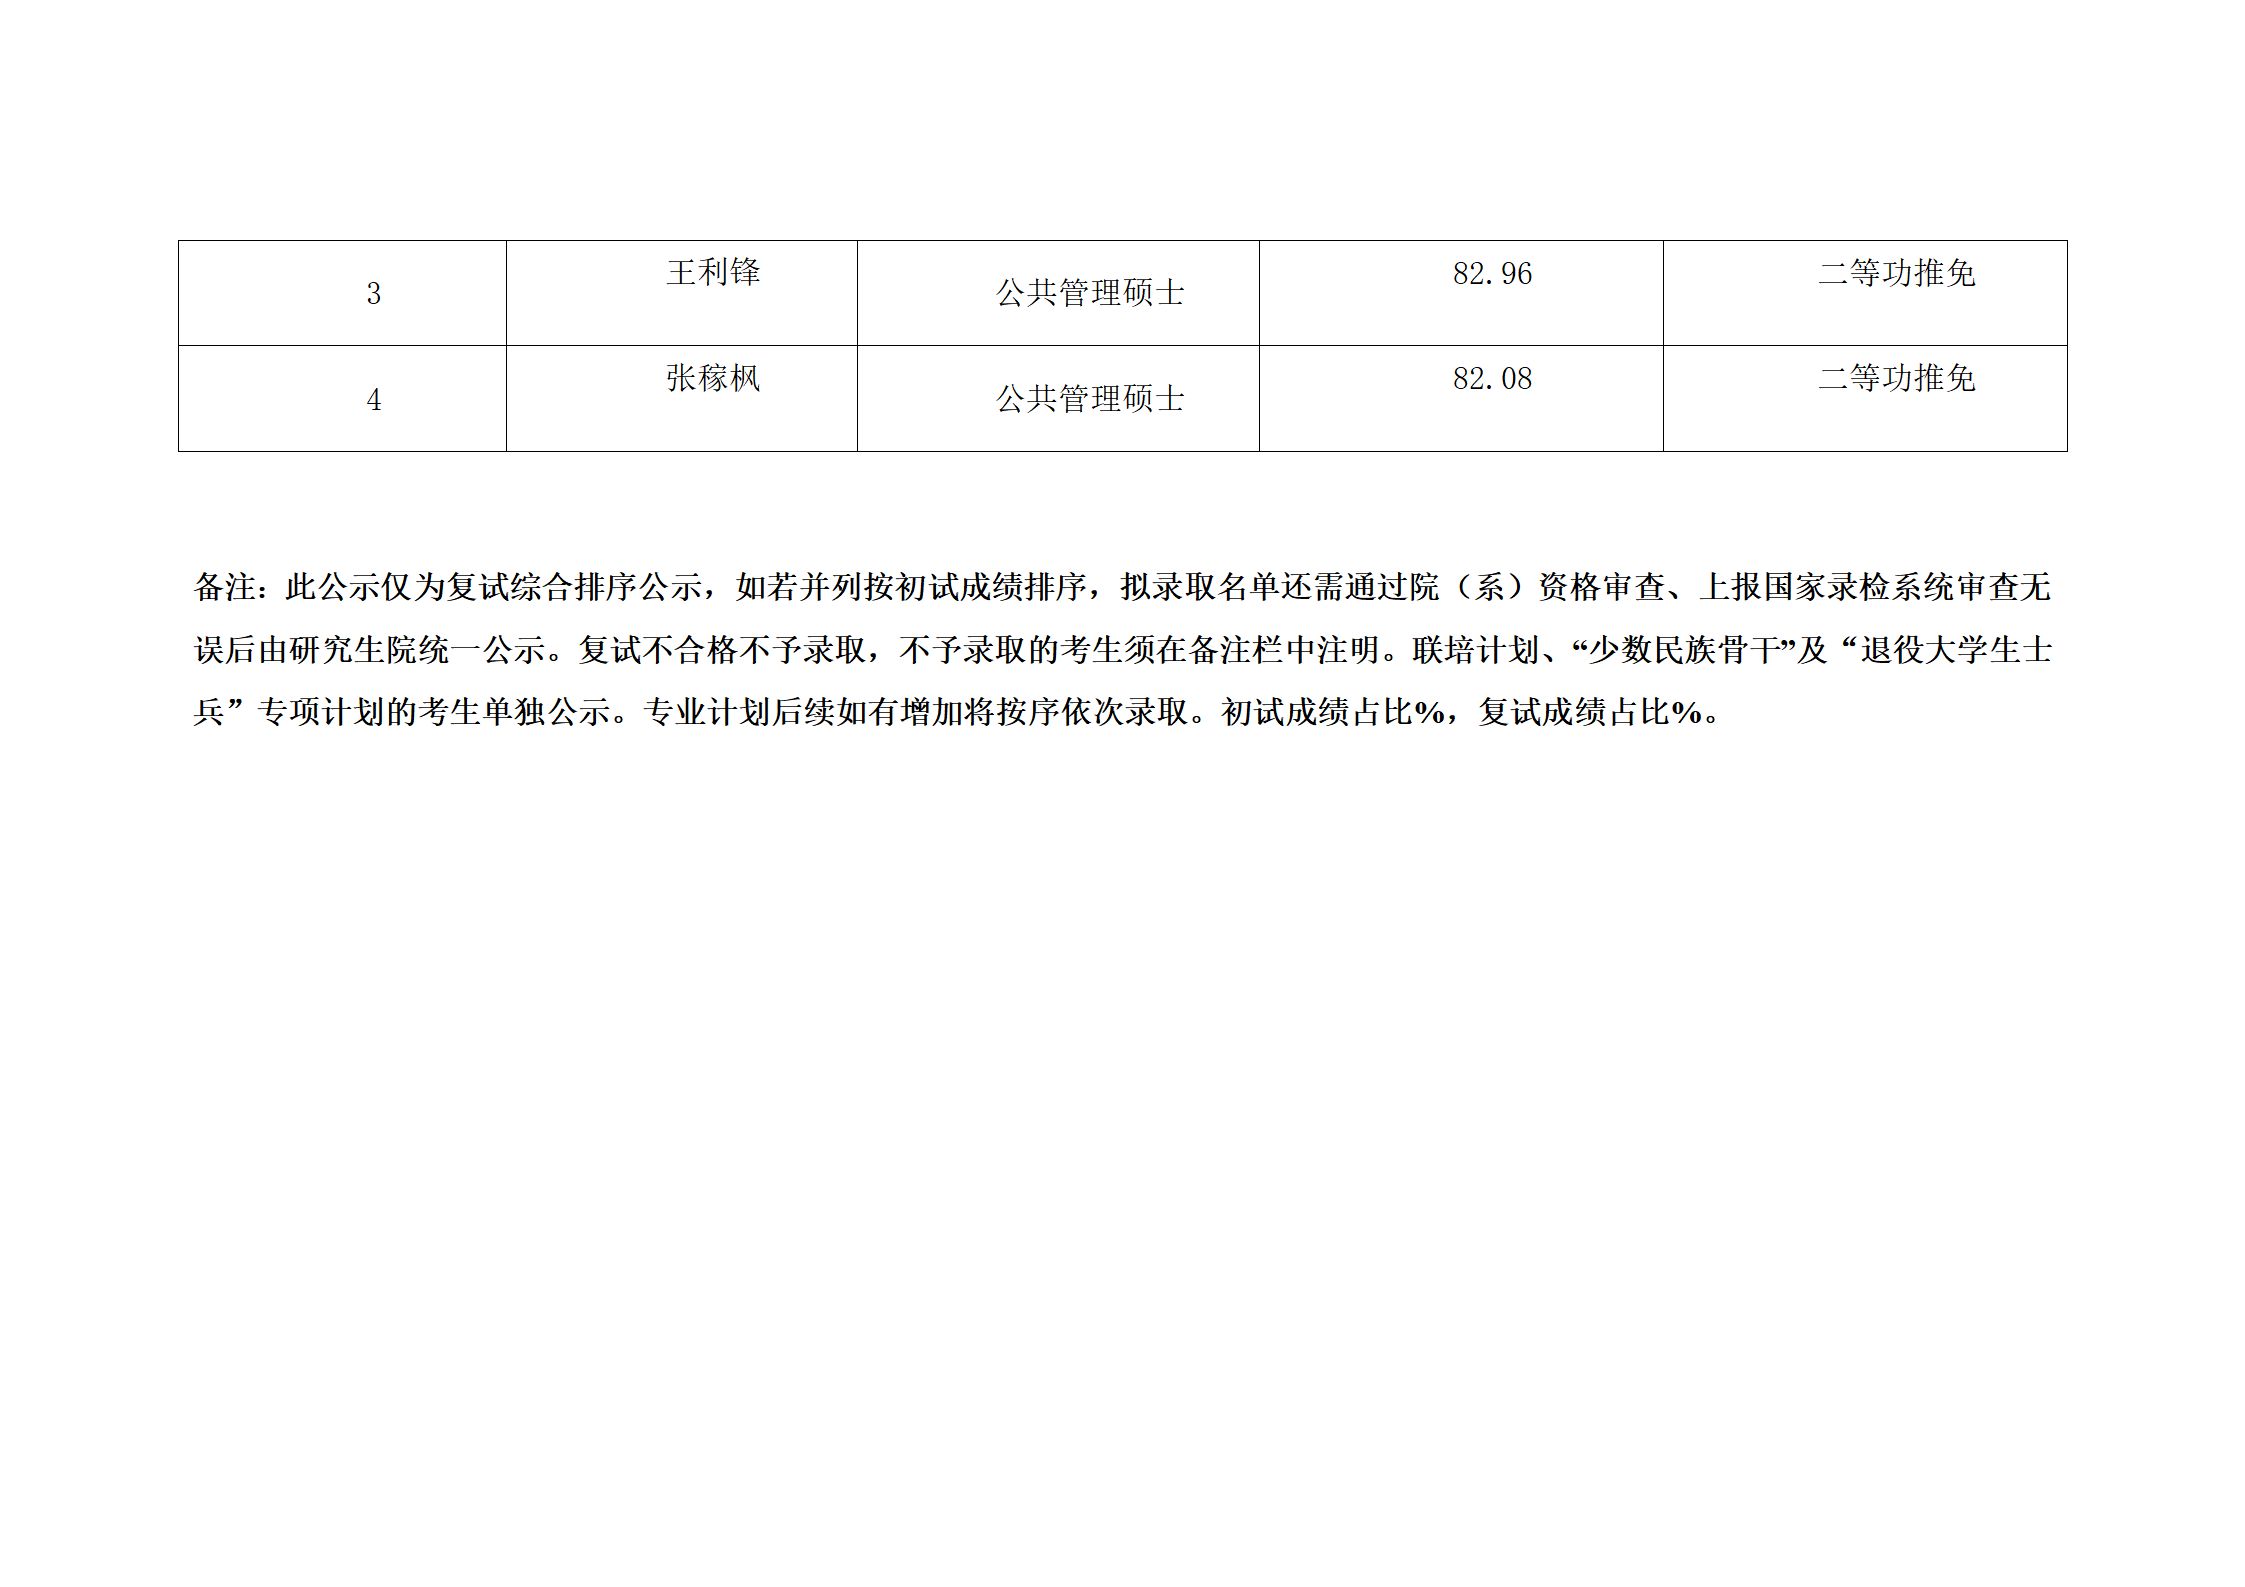 郑州大学2022年硕士研究生复试结果综合排序公示表-MPA_27.png